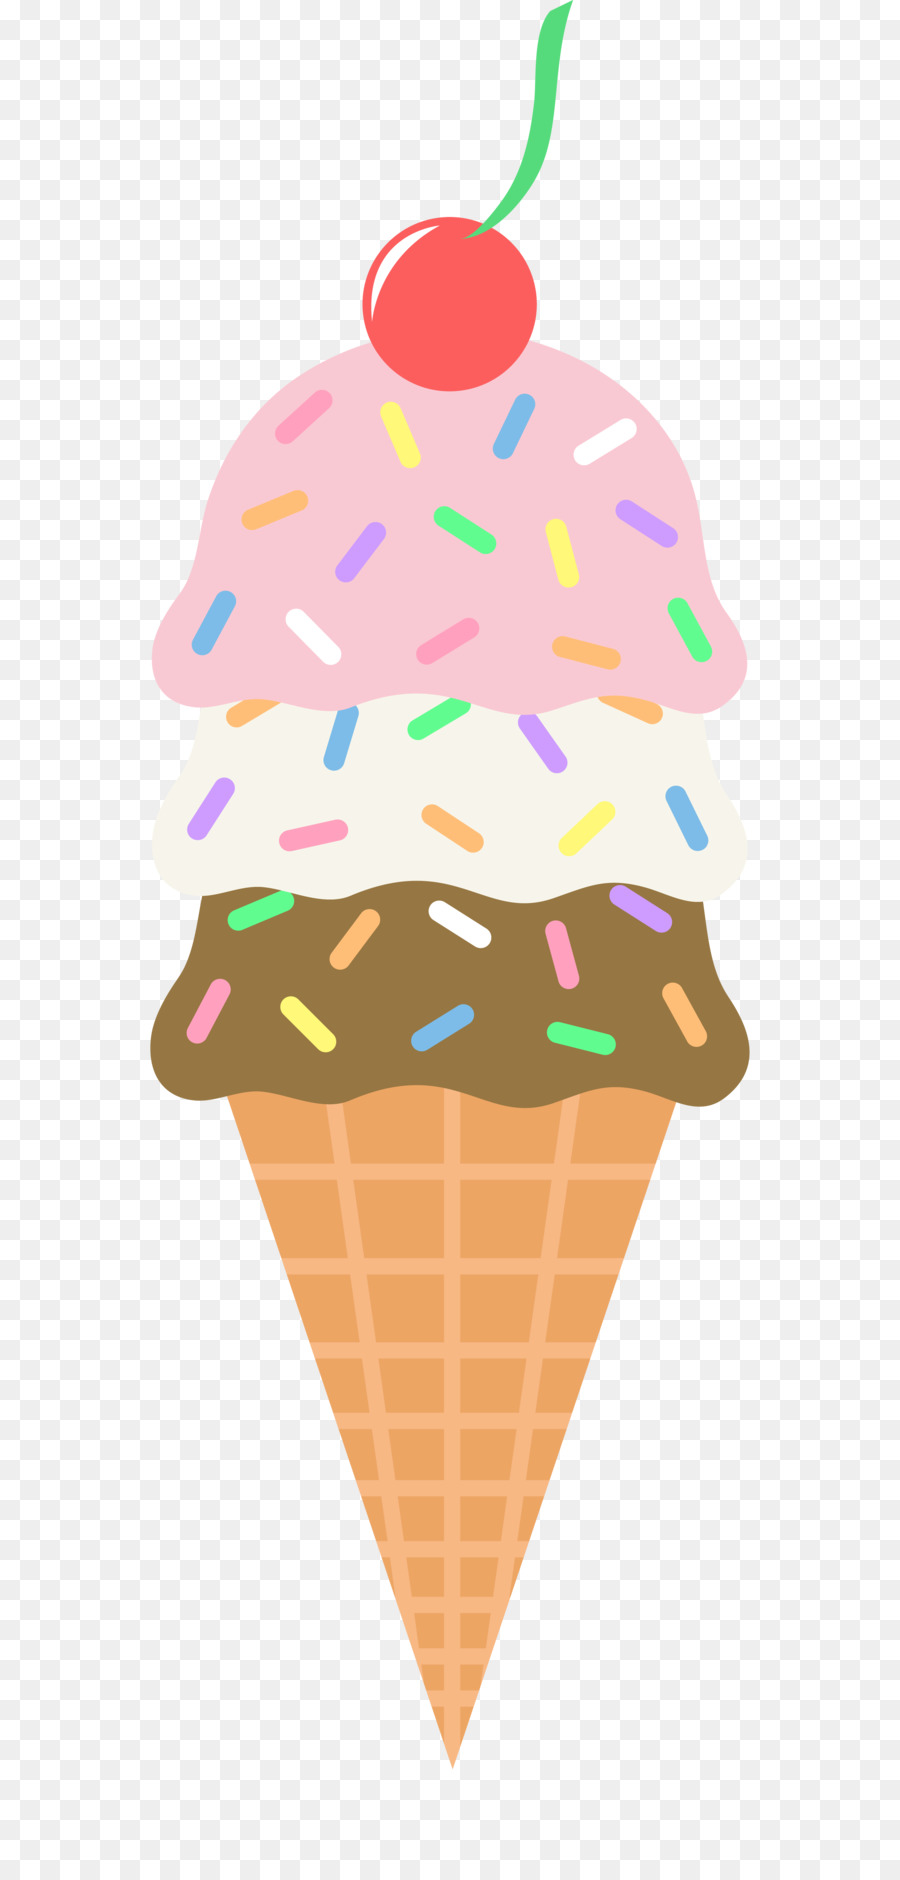 Ice Cream Cones Chocolate ice cream Sundae - ice cream png download - 2713*5639 - Free Transparent Ice Cream png Download.